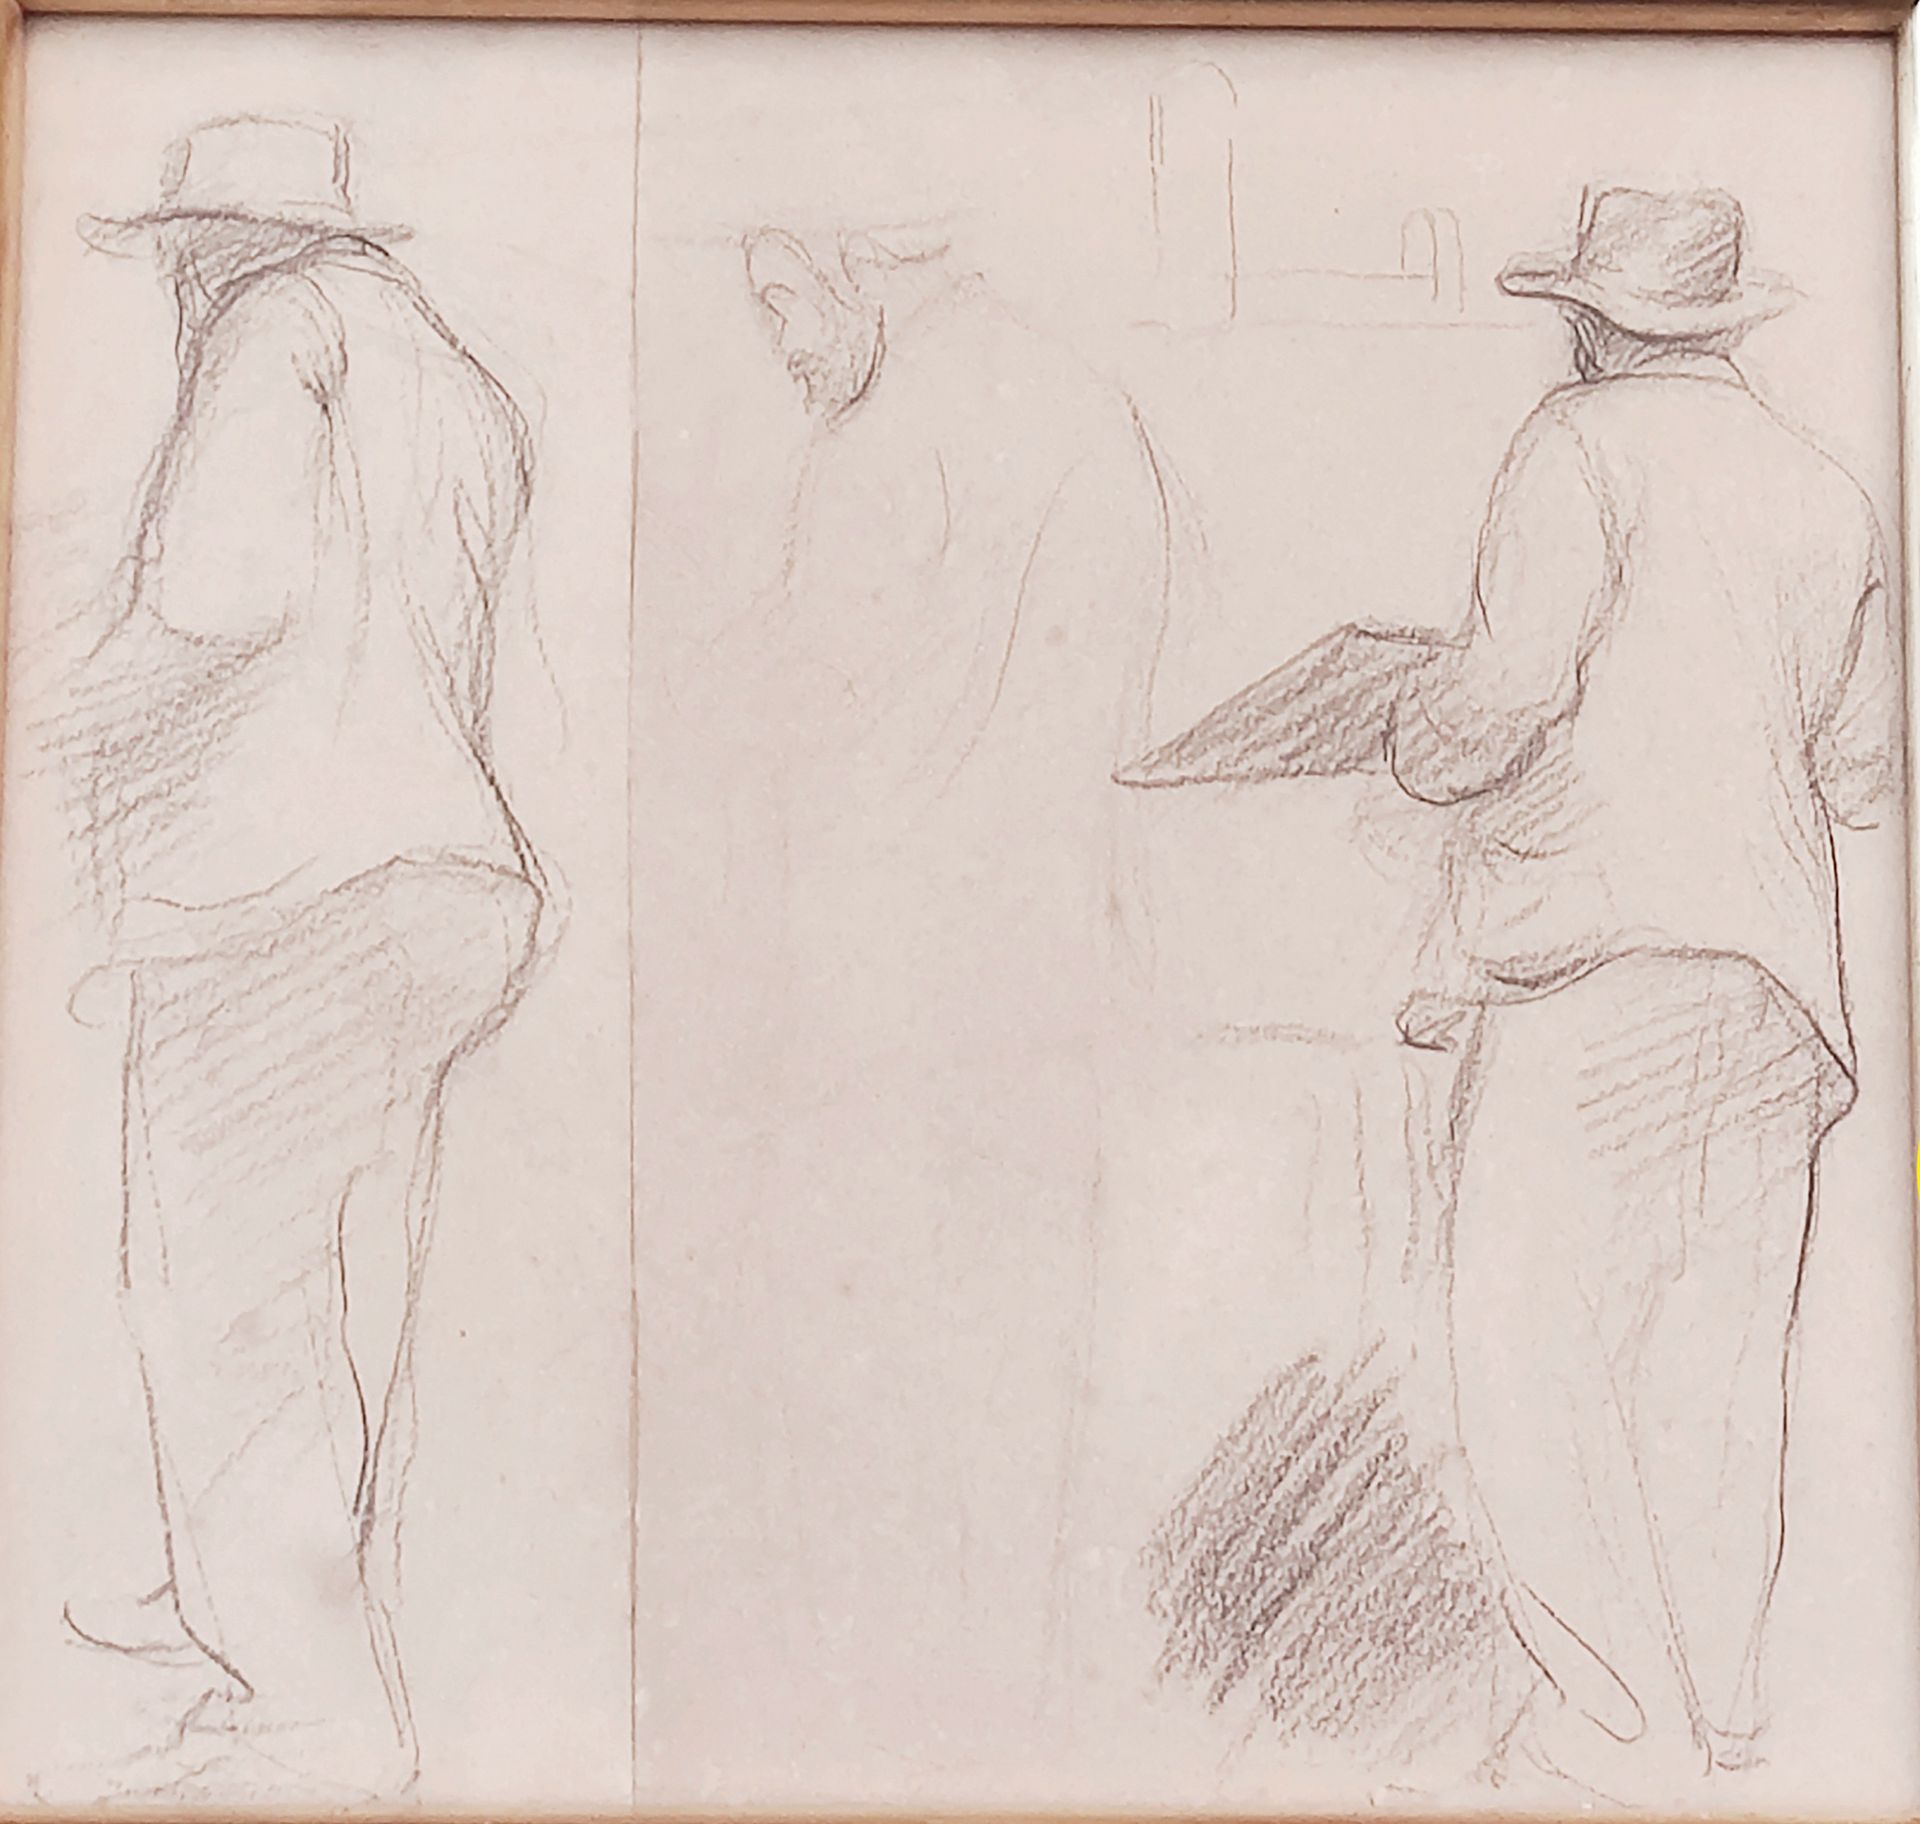 Camille PISSARRO (1830-1903) attribué à - 画架前的画家
两张纸上的木炭 22 x 23.5 cm (正在展出)